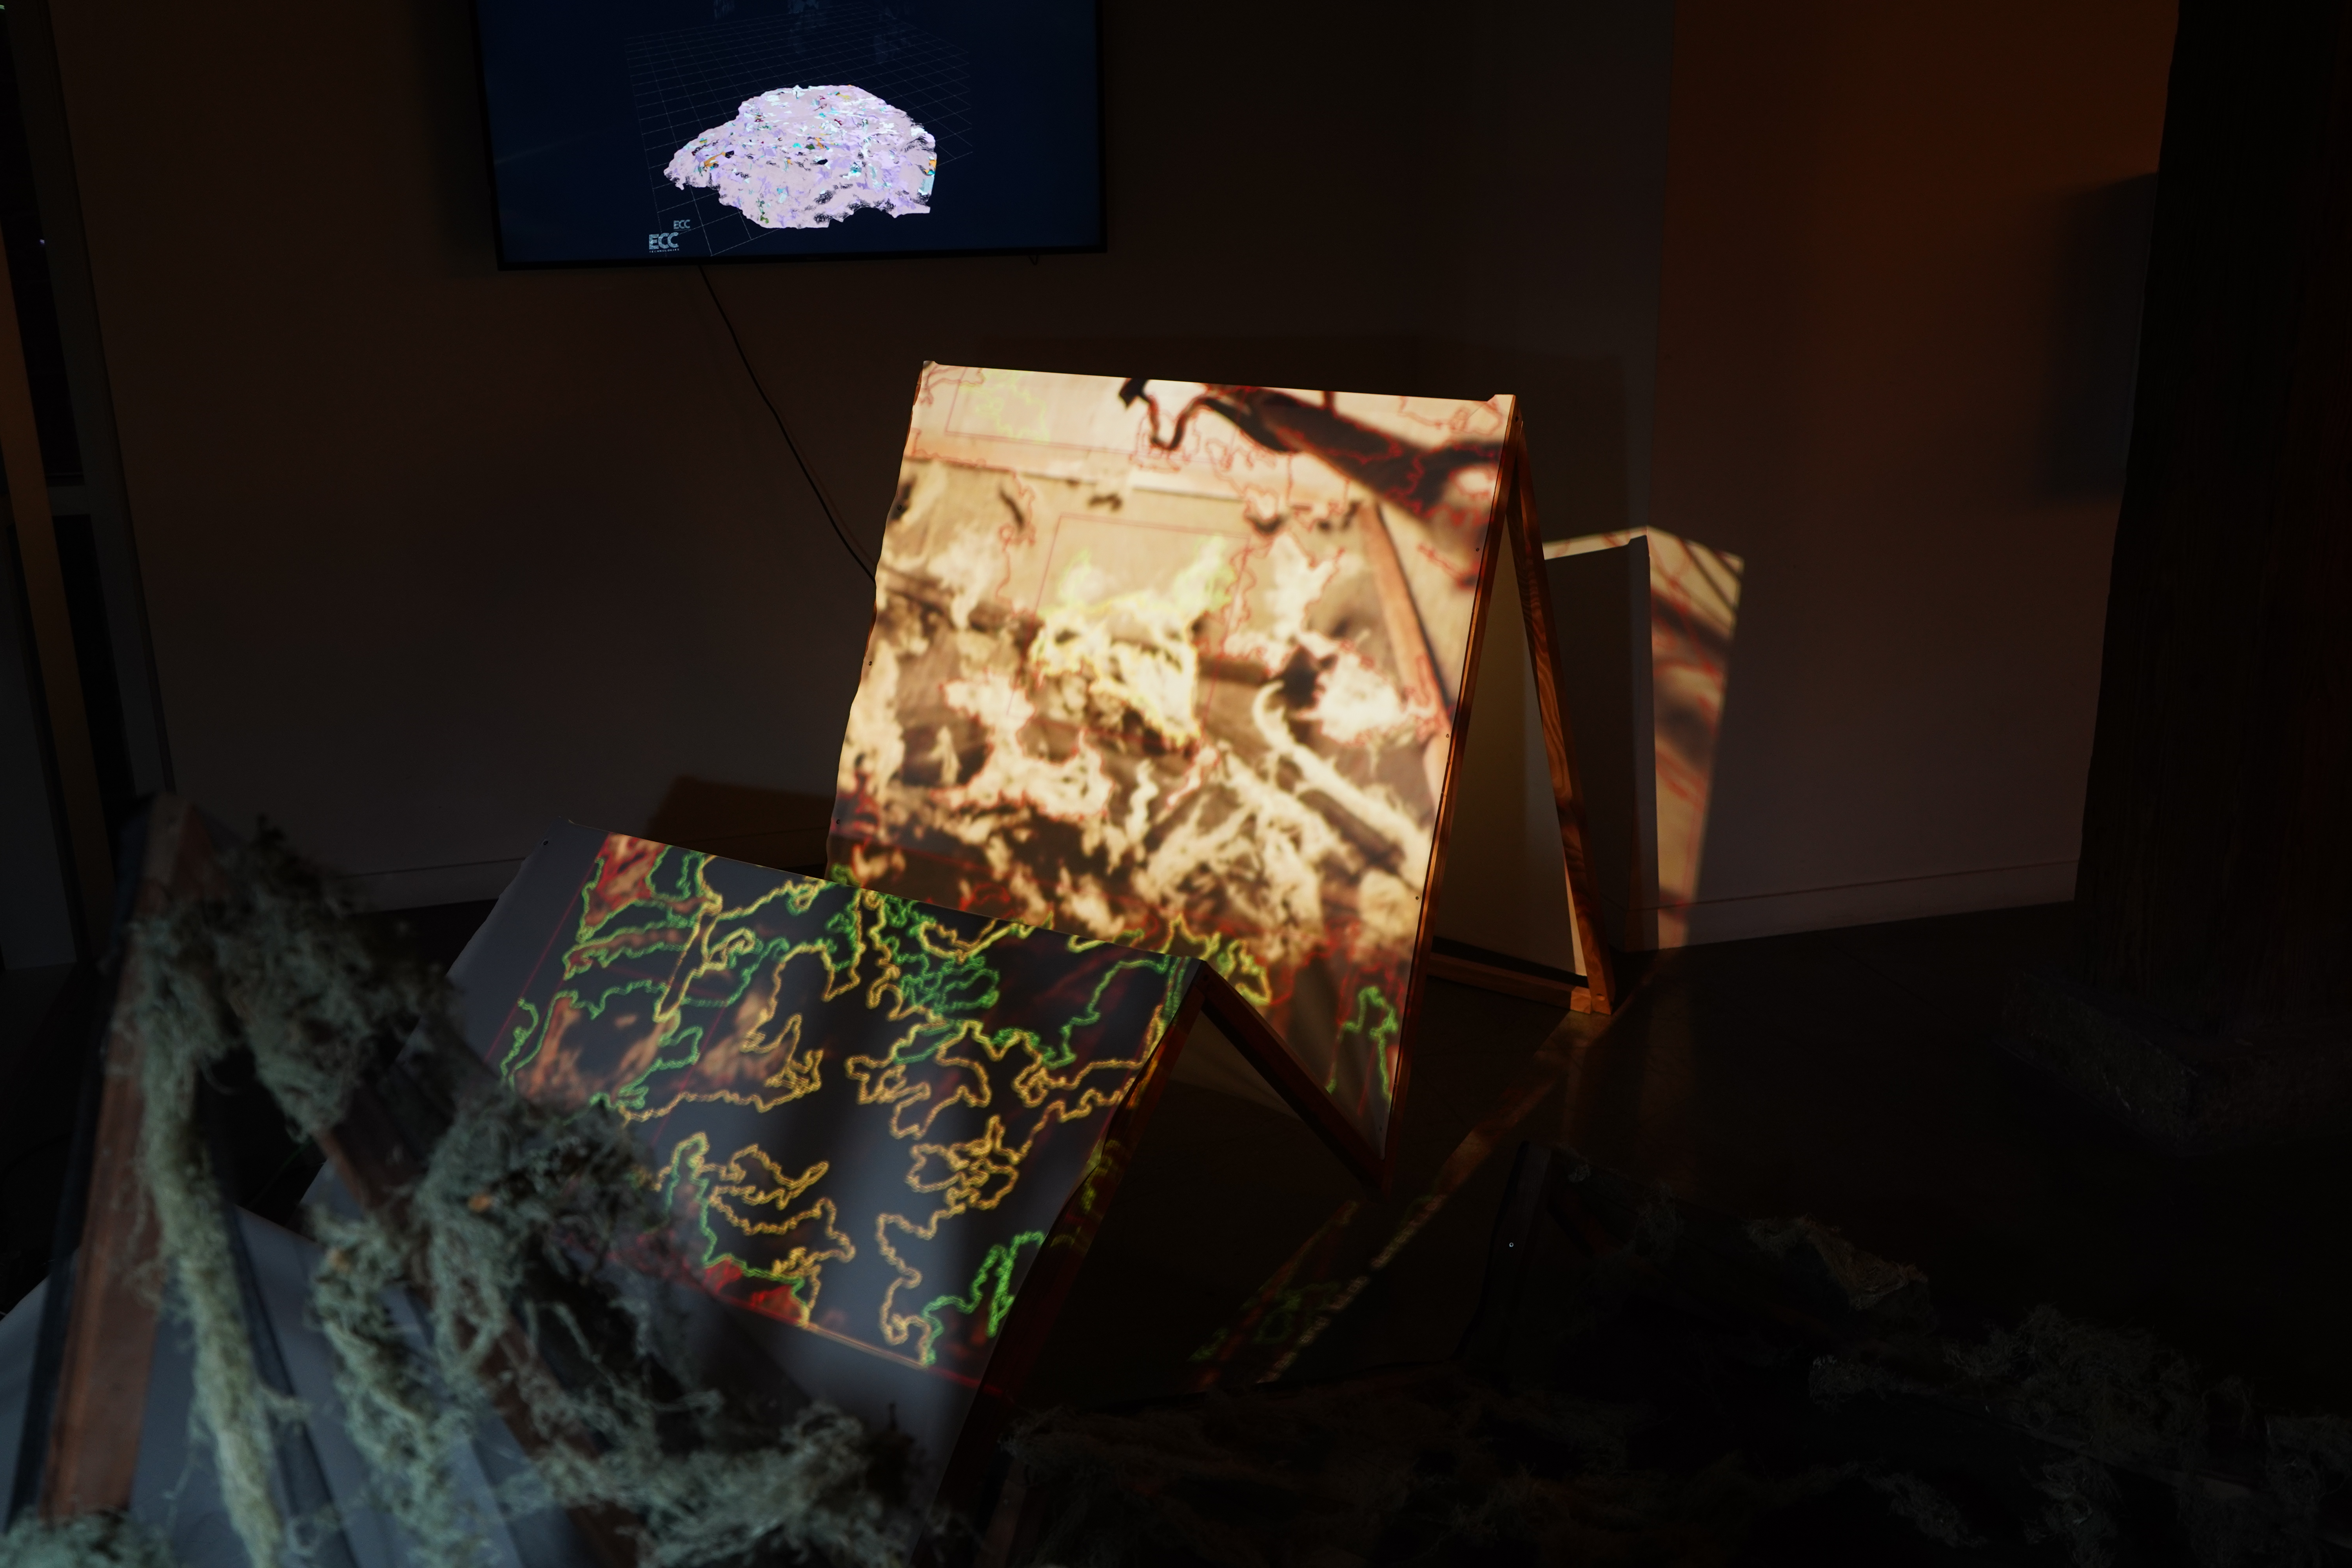 Lichen Interface prototype art installation at night